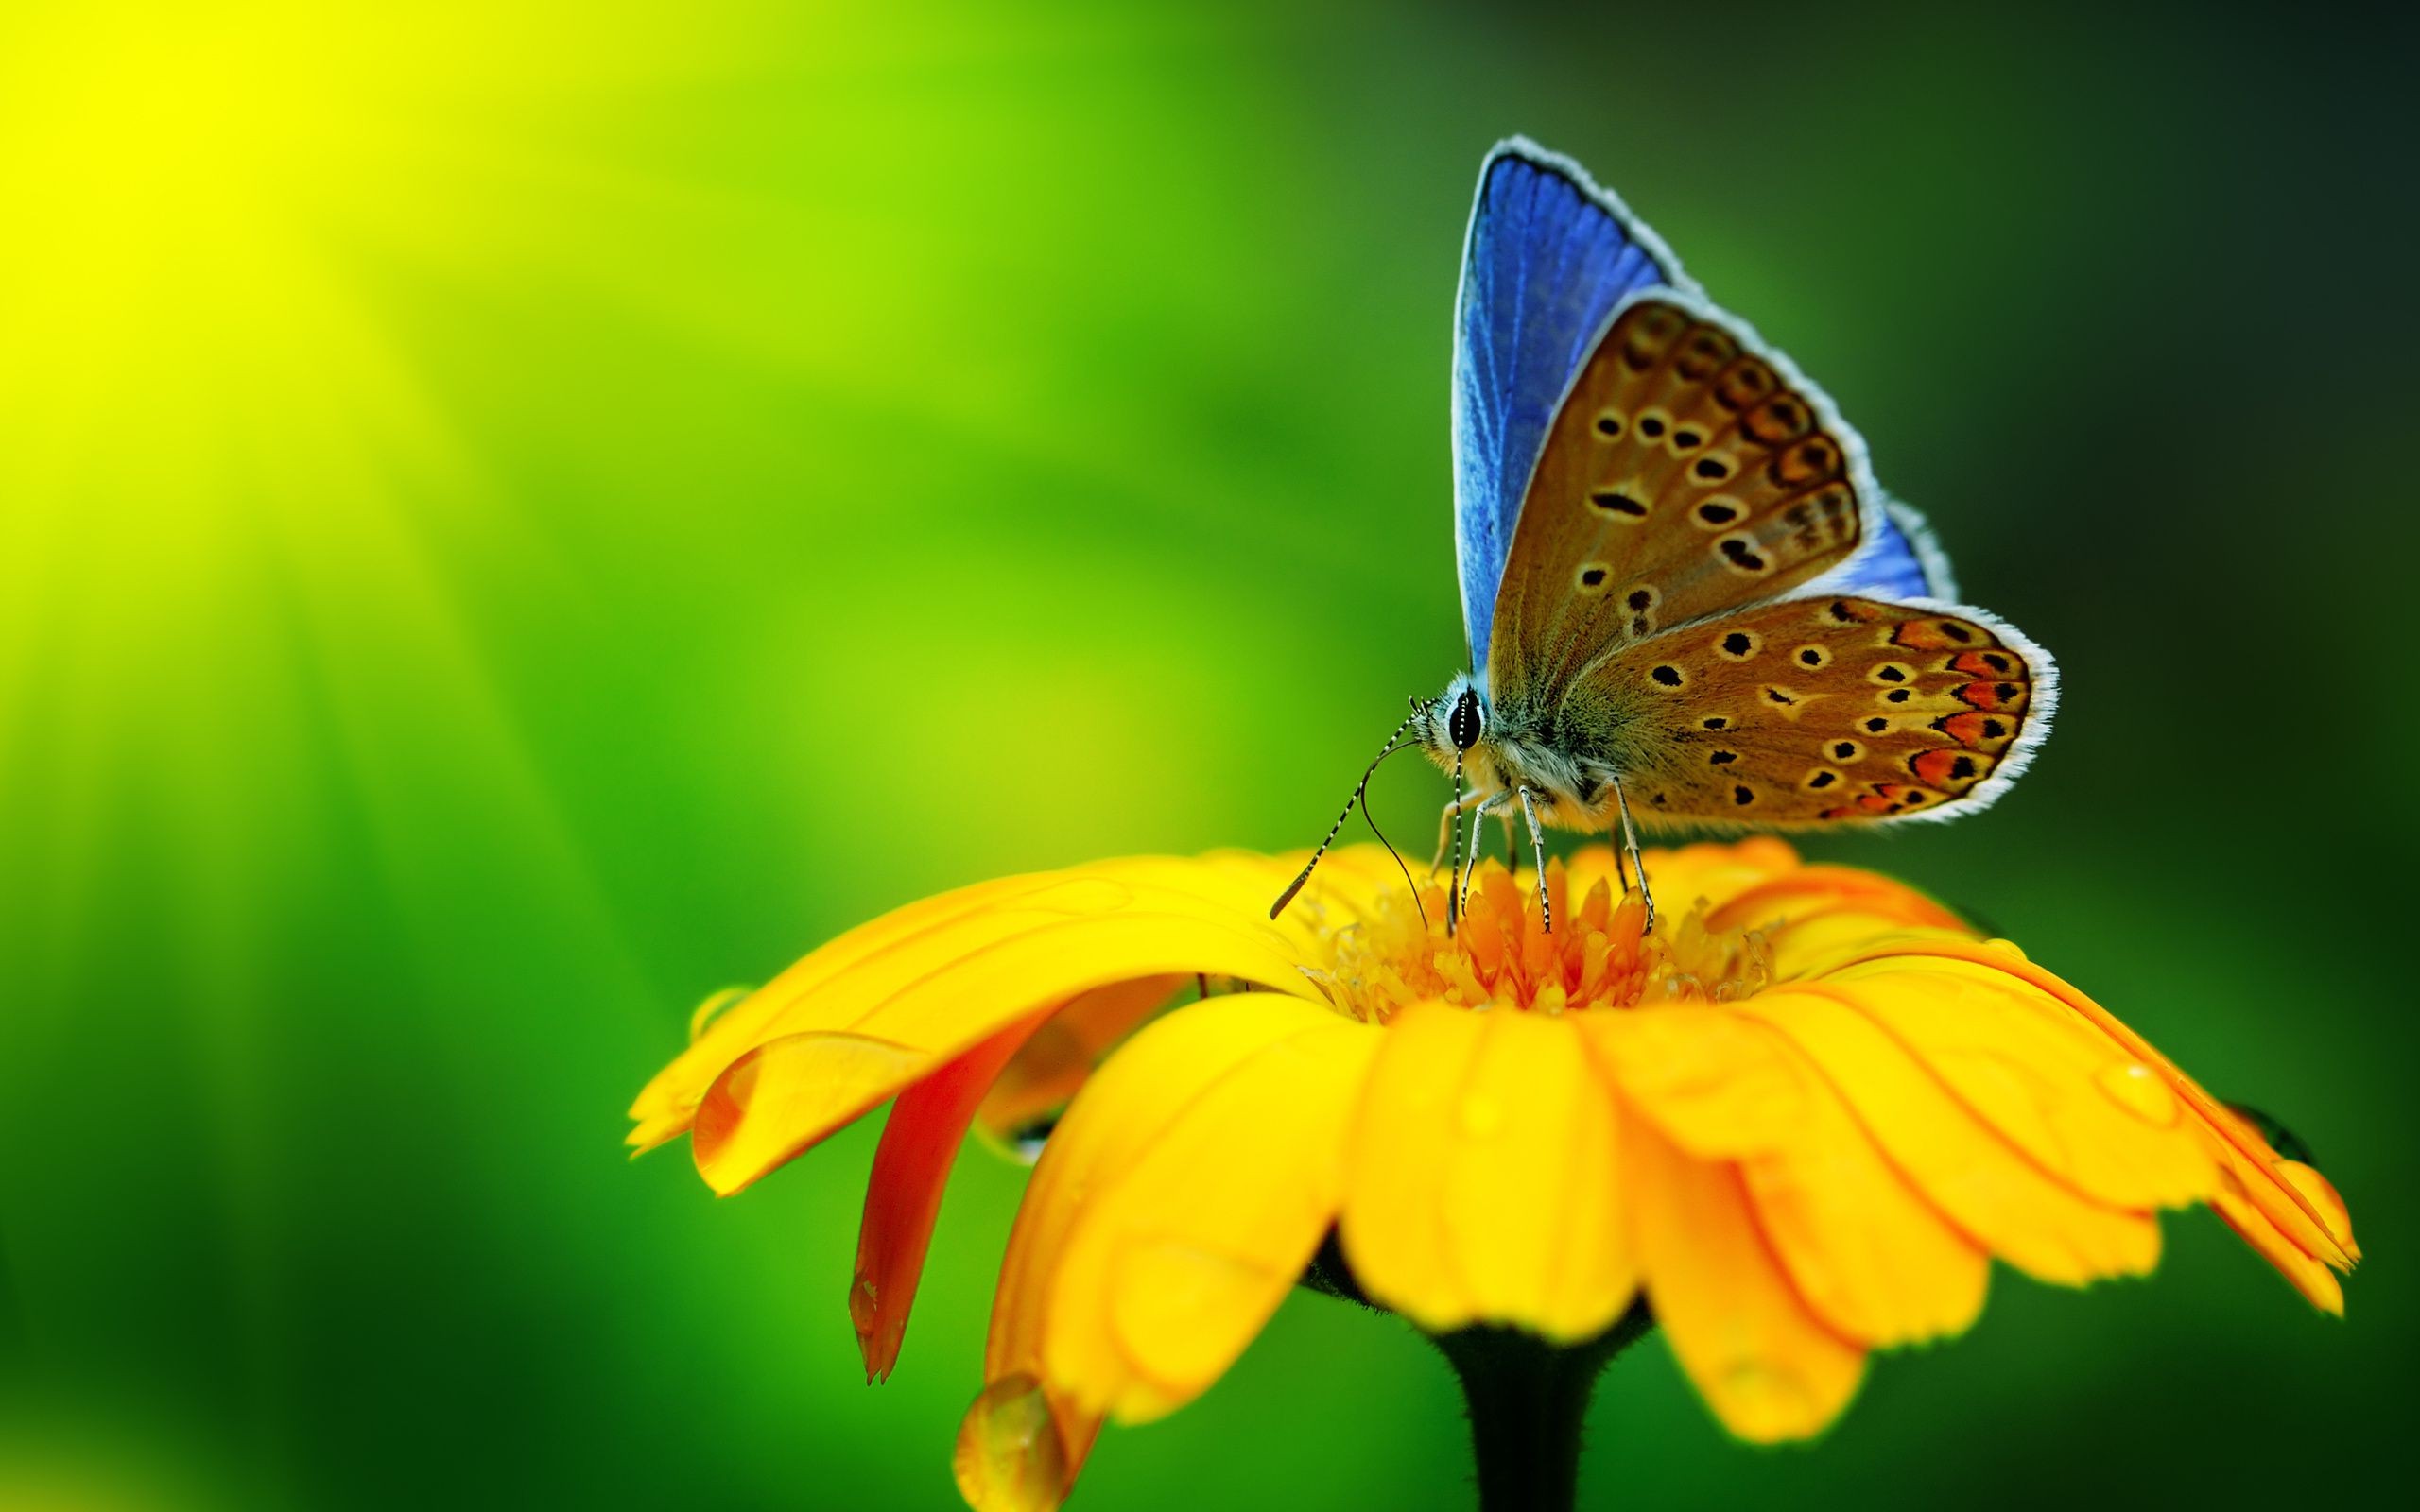 花の壁紙と蝶,蛾と蝶,バタフライ,昆虫,共通の青,シジミチョウ